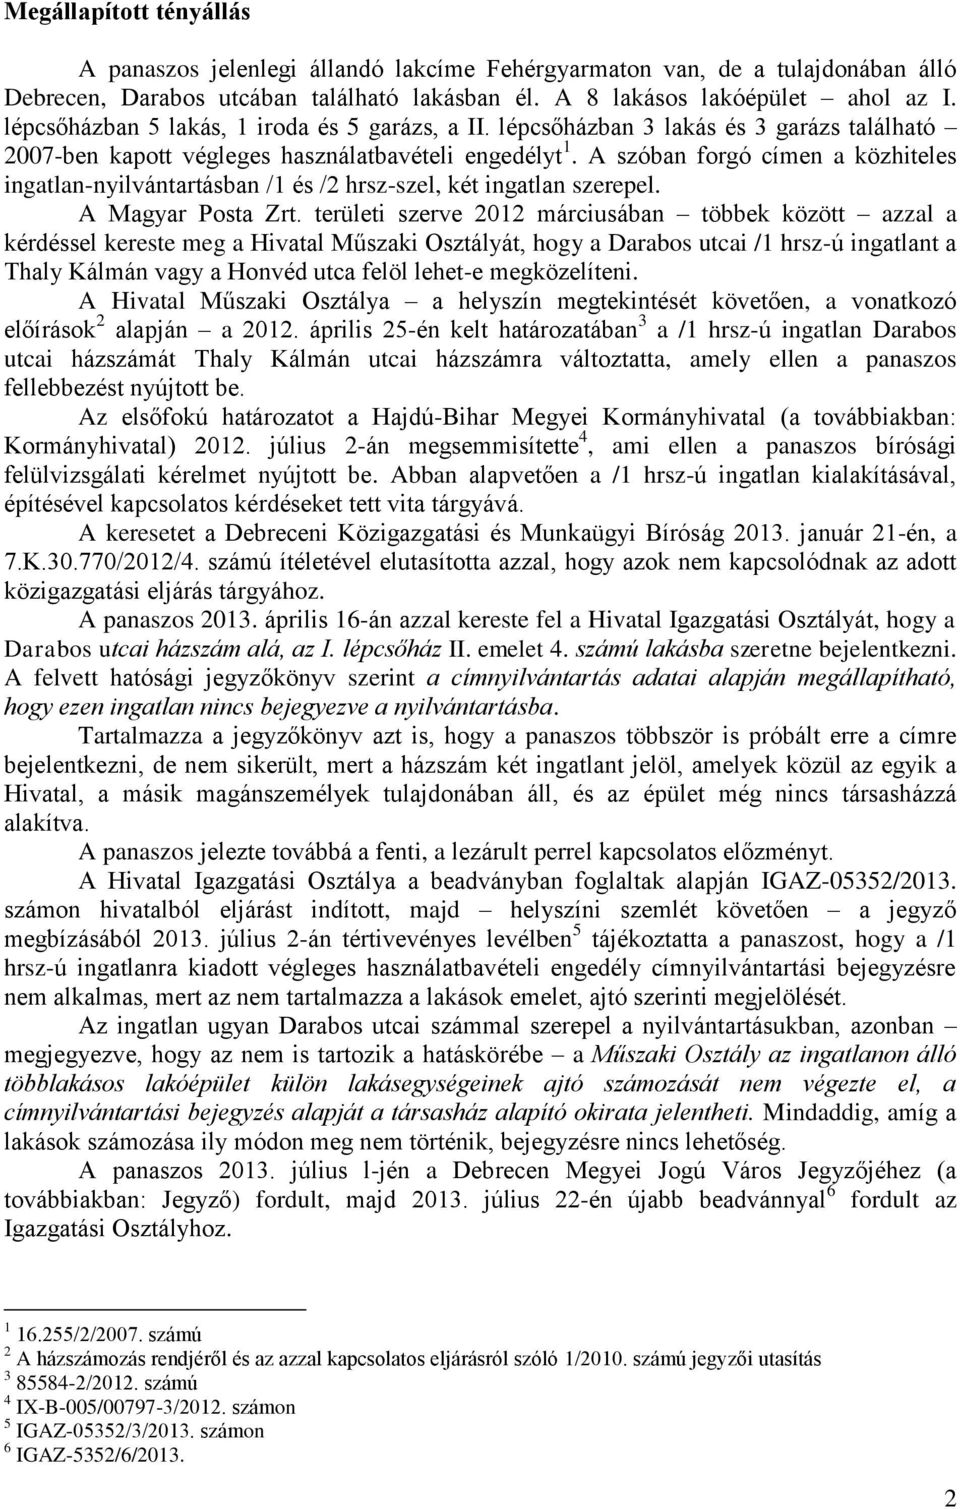 A szóban forgó címen a közhiteles ingatlan-nyilvántartásban /1 és /2 hrsz-szel, két ingatlan szerepel. A Magyar Posta Zrt.